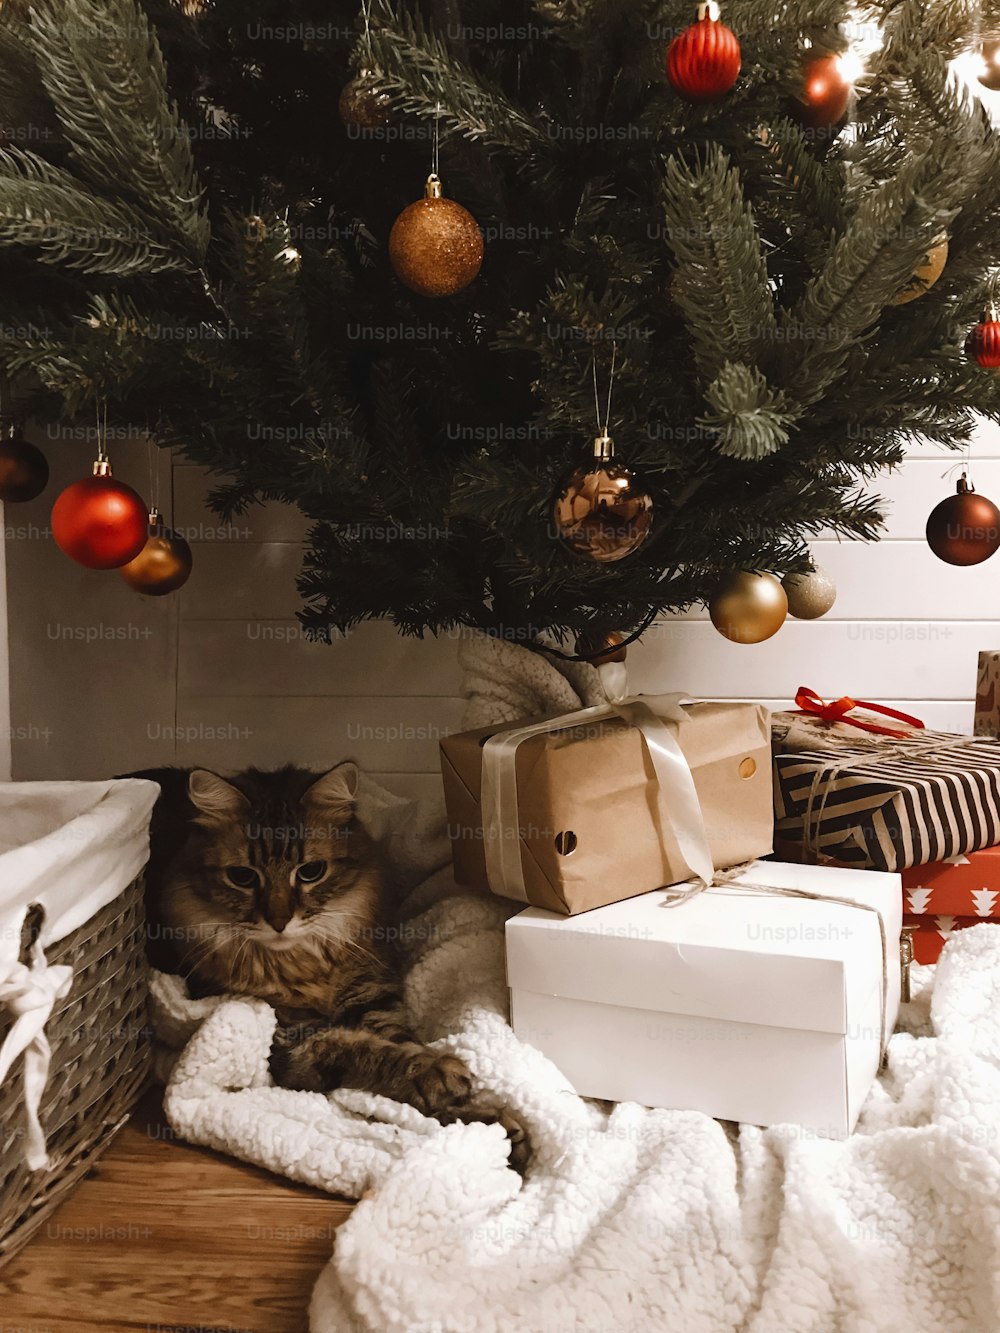 Chat tigré mignon assis avec des cadeaux sous le sapin de Noël avec des boules rouges et dorées dans la salle festive. Animal de compagnie et vacances. Joyeux Noël